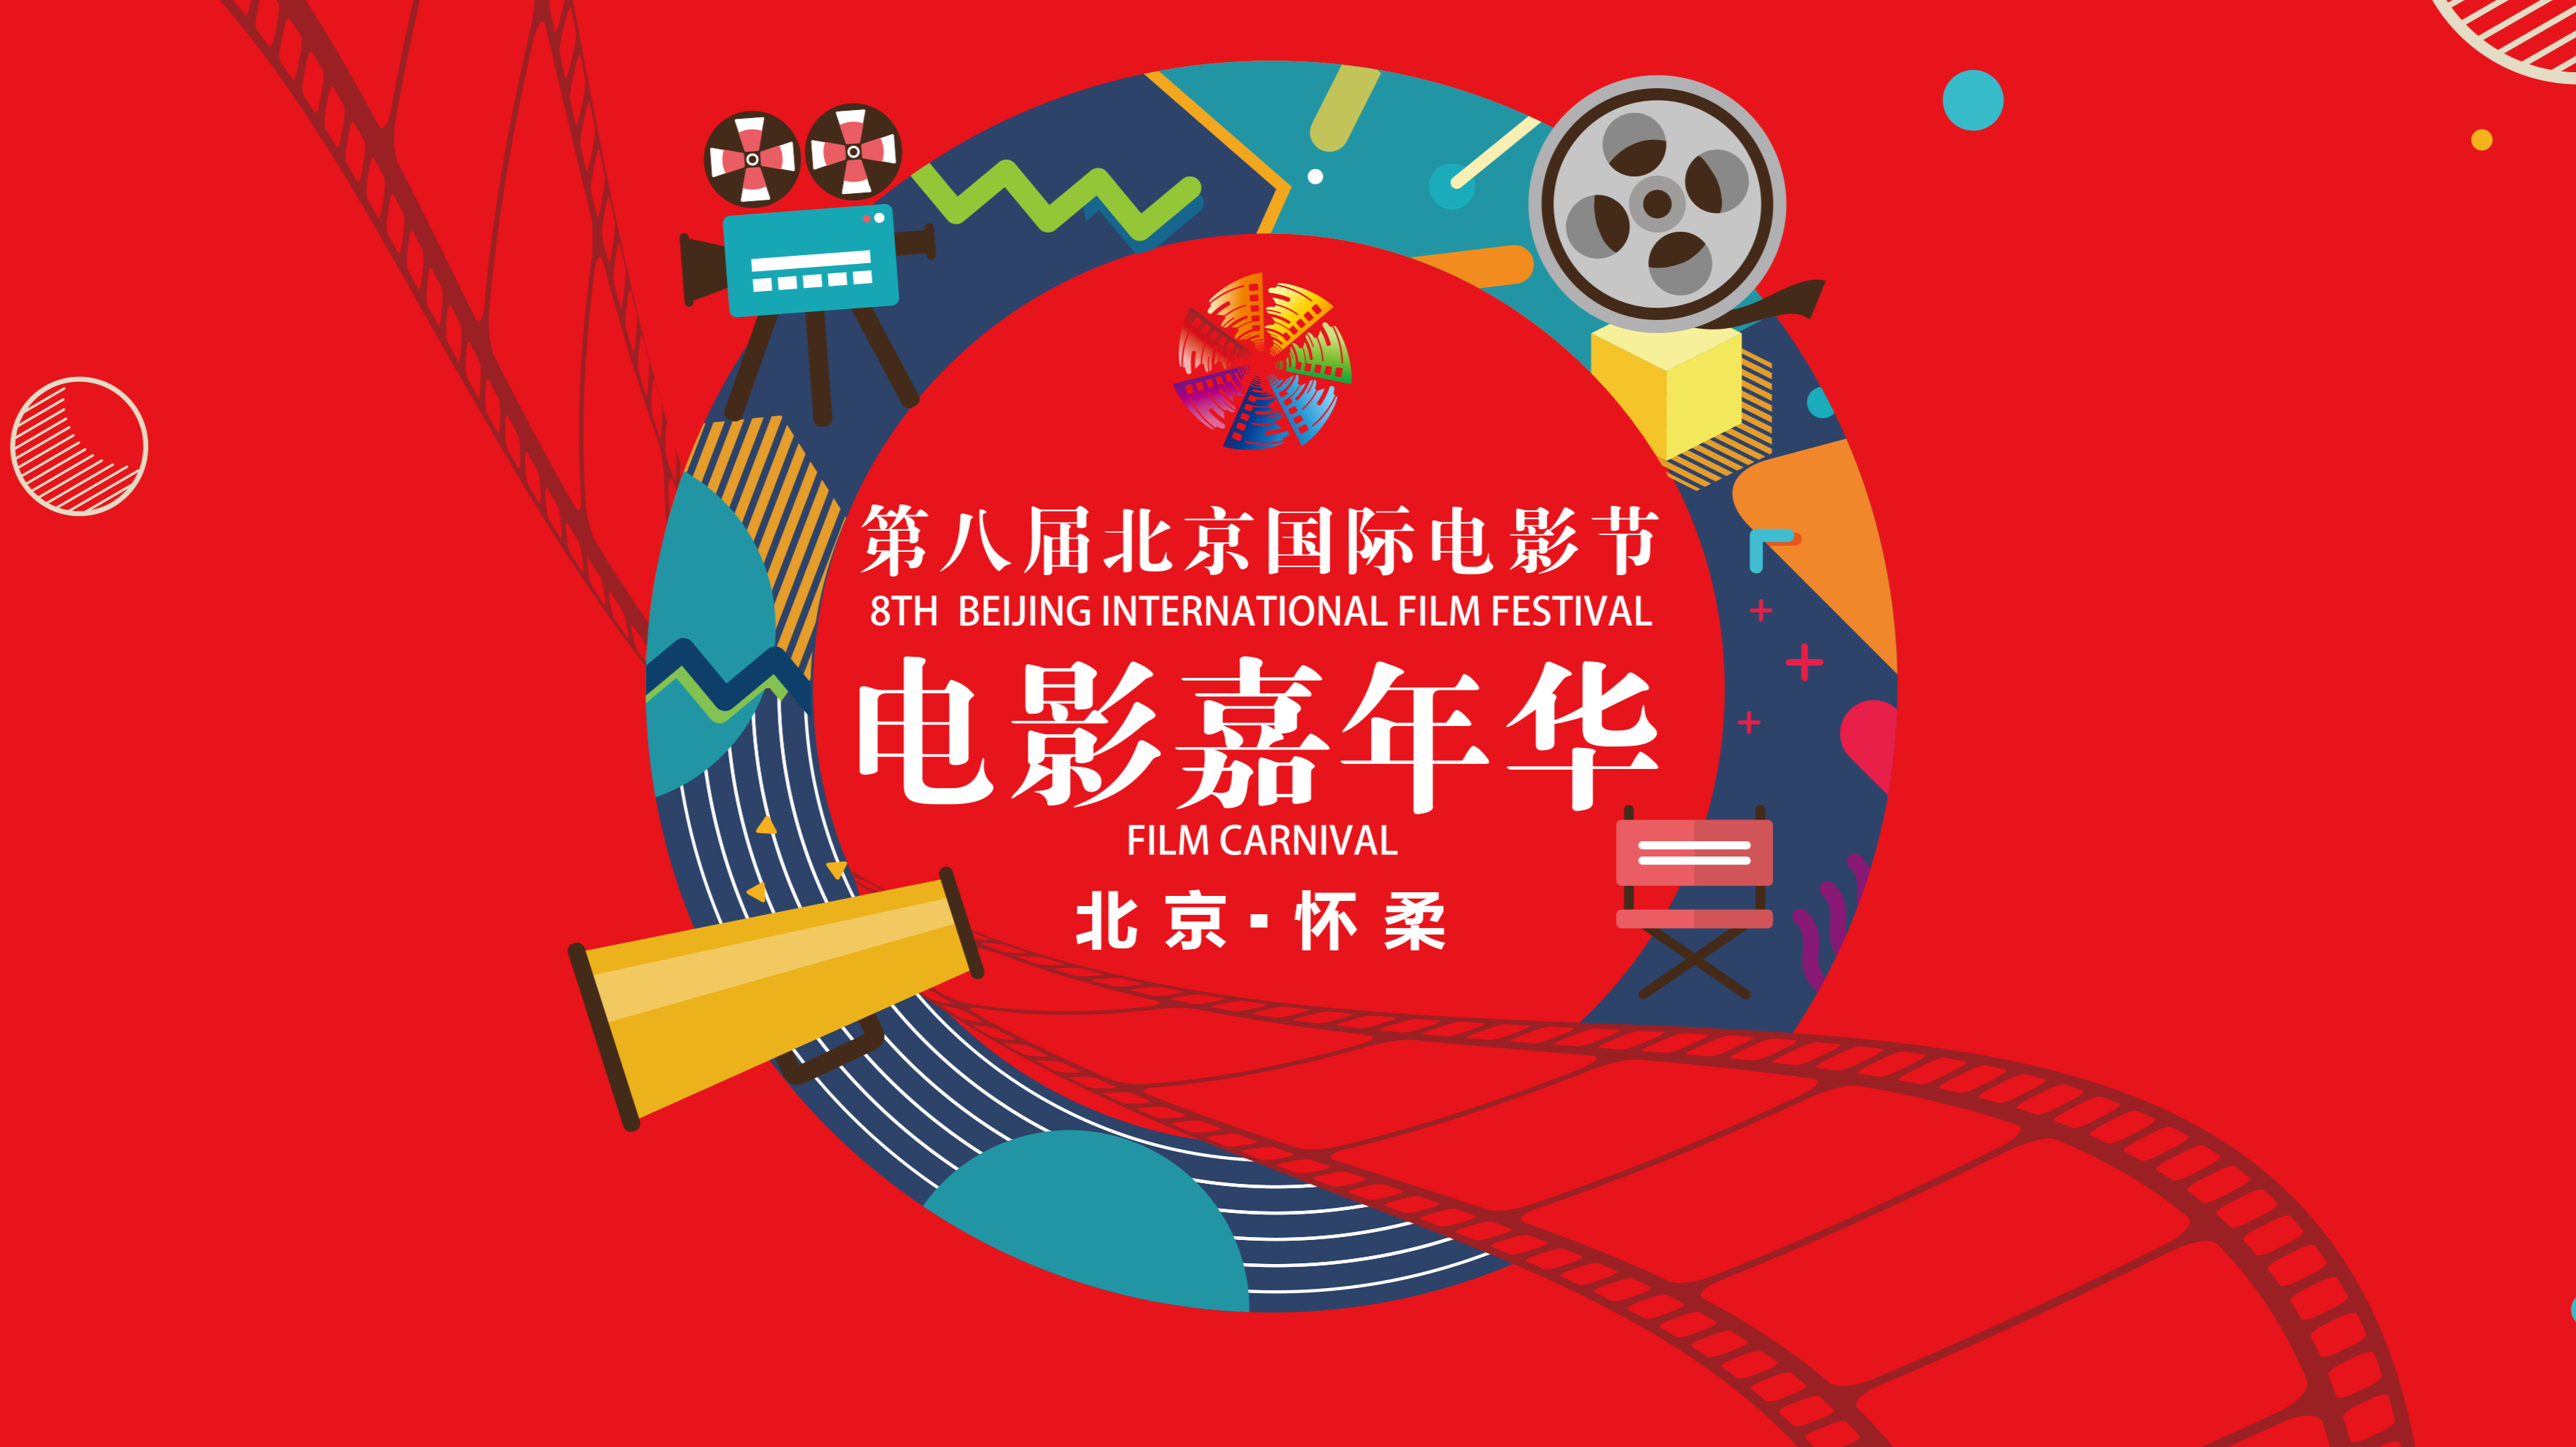 抢鲜看!第八届北京国际电影节电影嘉年华30秒宣传片正式公布